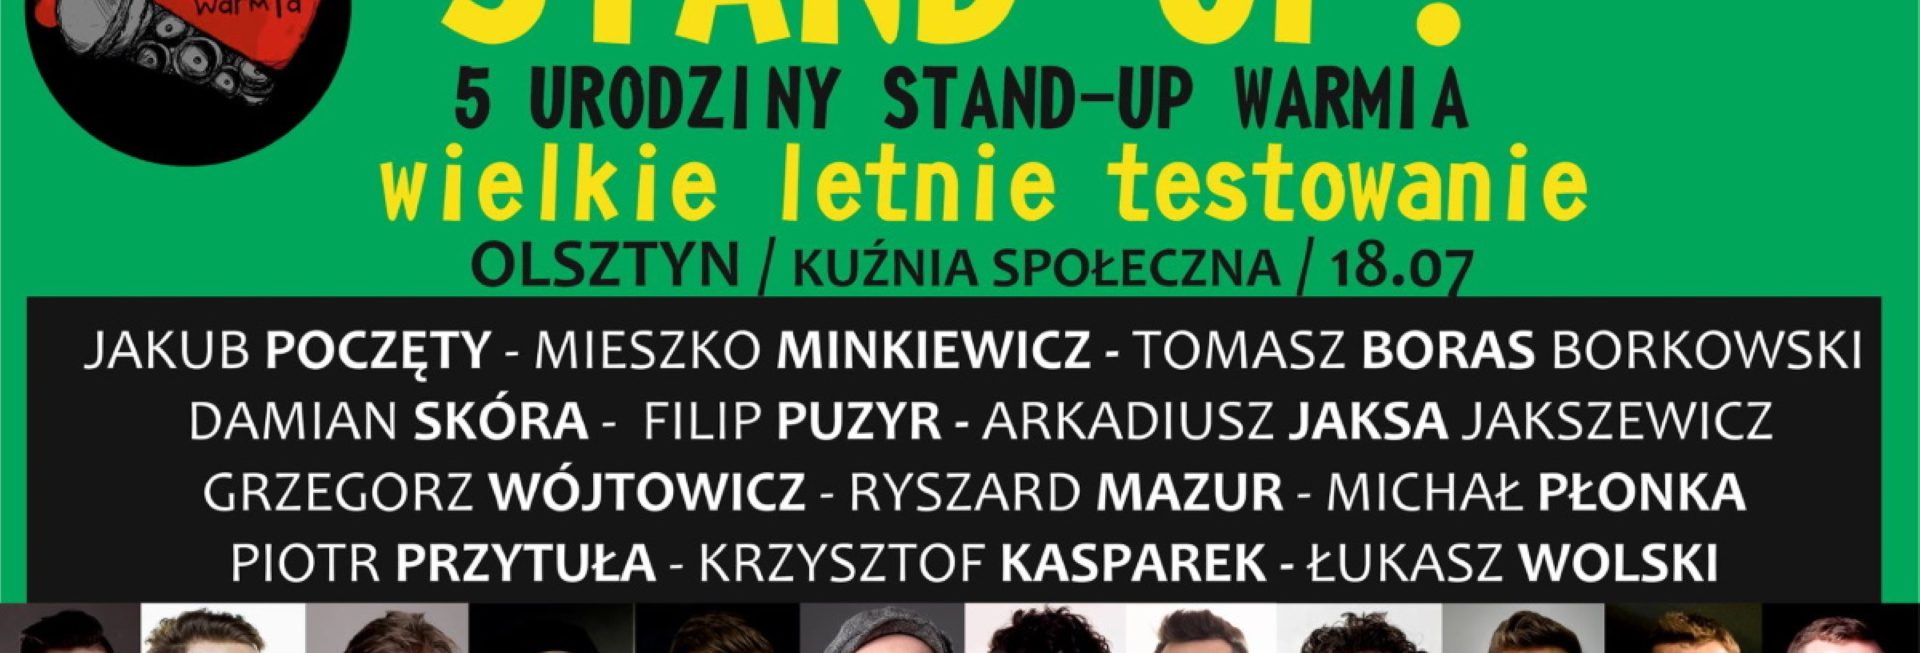 Plakat graficzny zapraszający w niedzielę do Olsztyna na 5. Urodziny STAND-UP WARMIA - Olsztyn 2021. Na plakacie zdjęcia komików oraz napisy zapraszające na występy. 